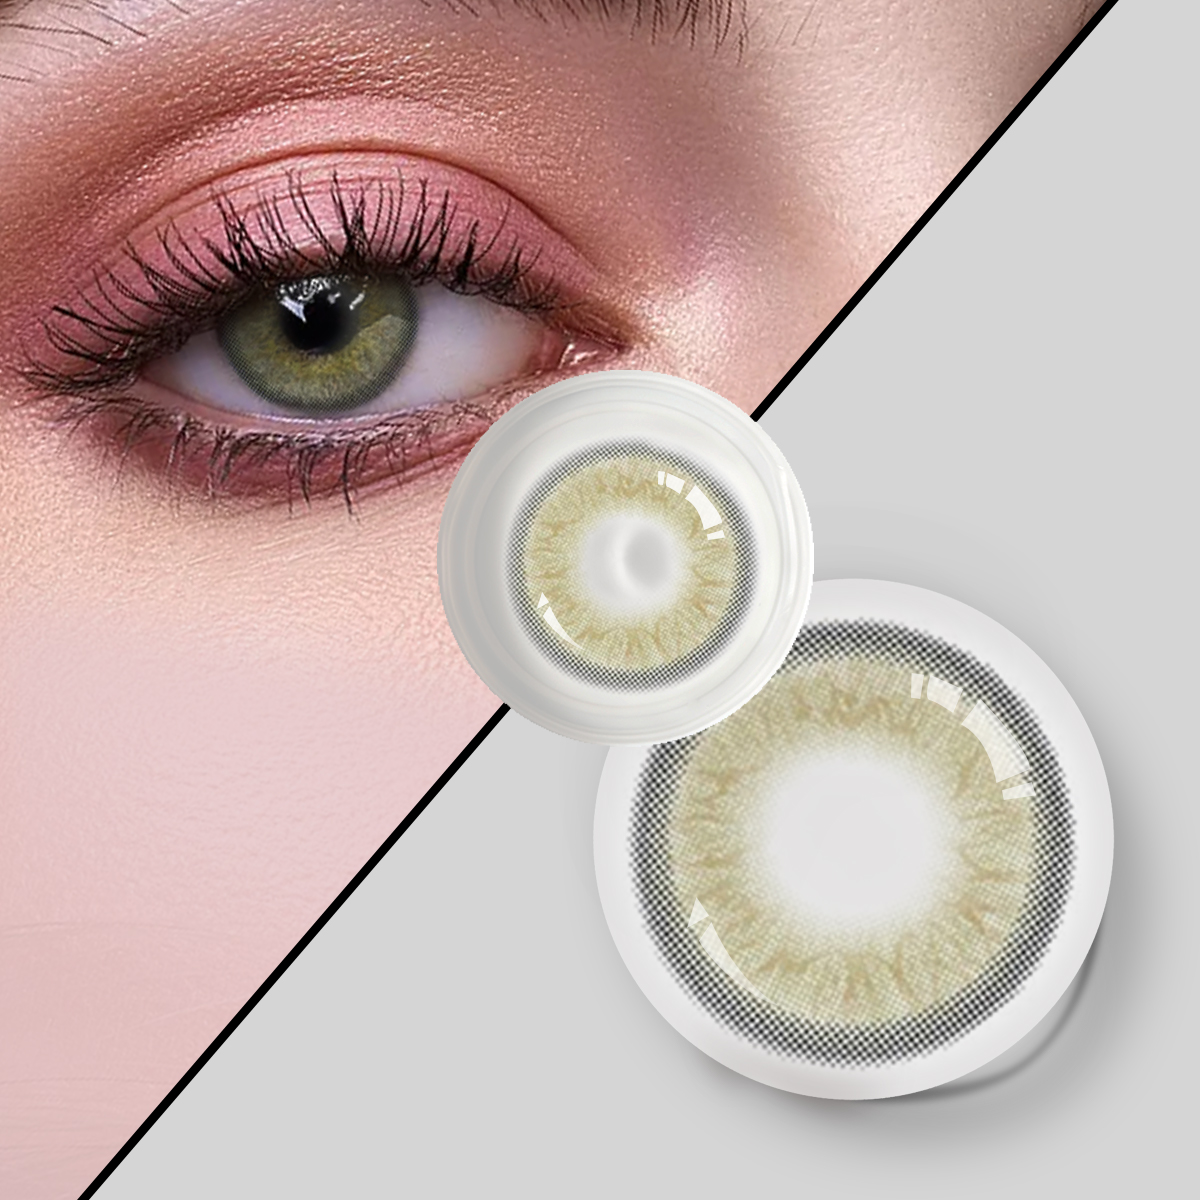 Dbeyes 3-tonowe roczne soczewki kontaktowe w nowym stylu hurtowo kolorowe soczewki kontaktowe do oczu